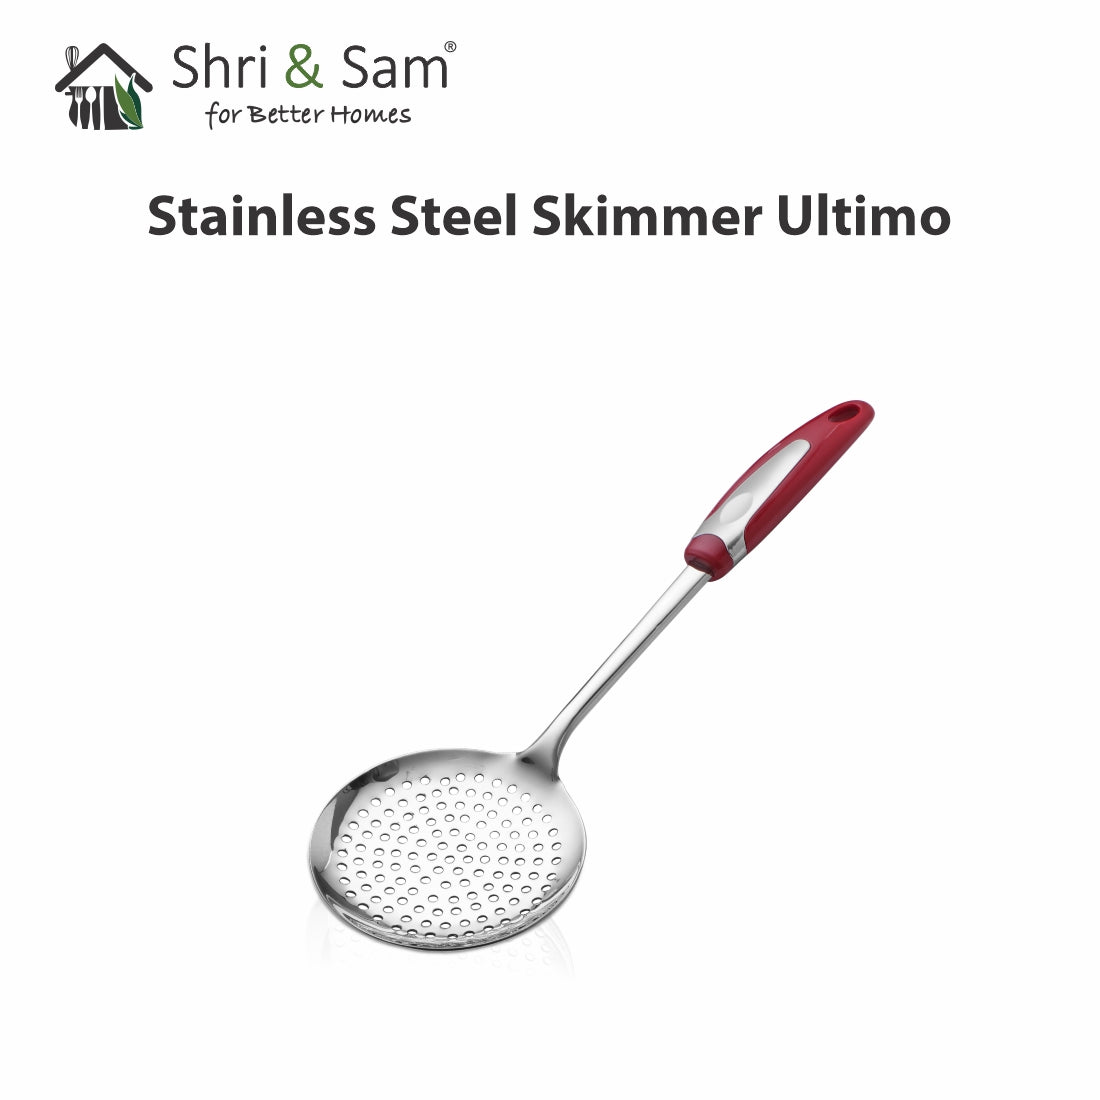 Stainless Steel Skimmer Ultimo